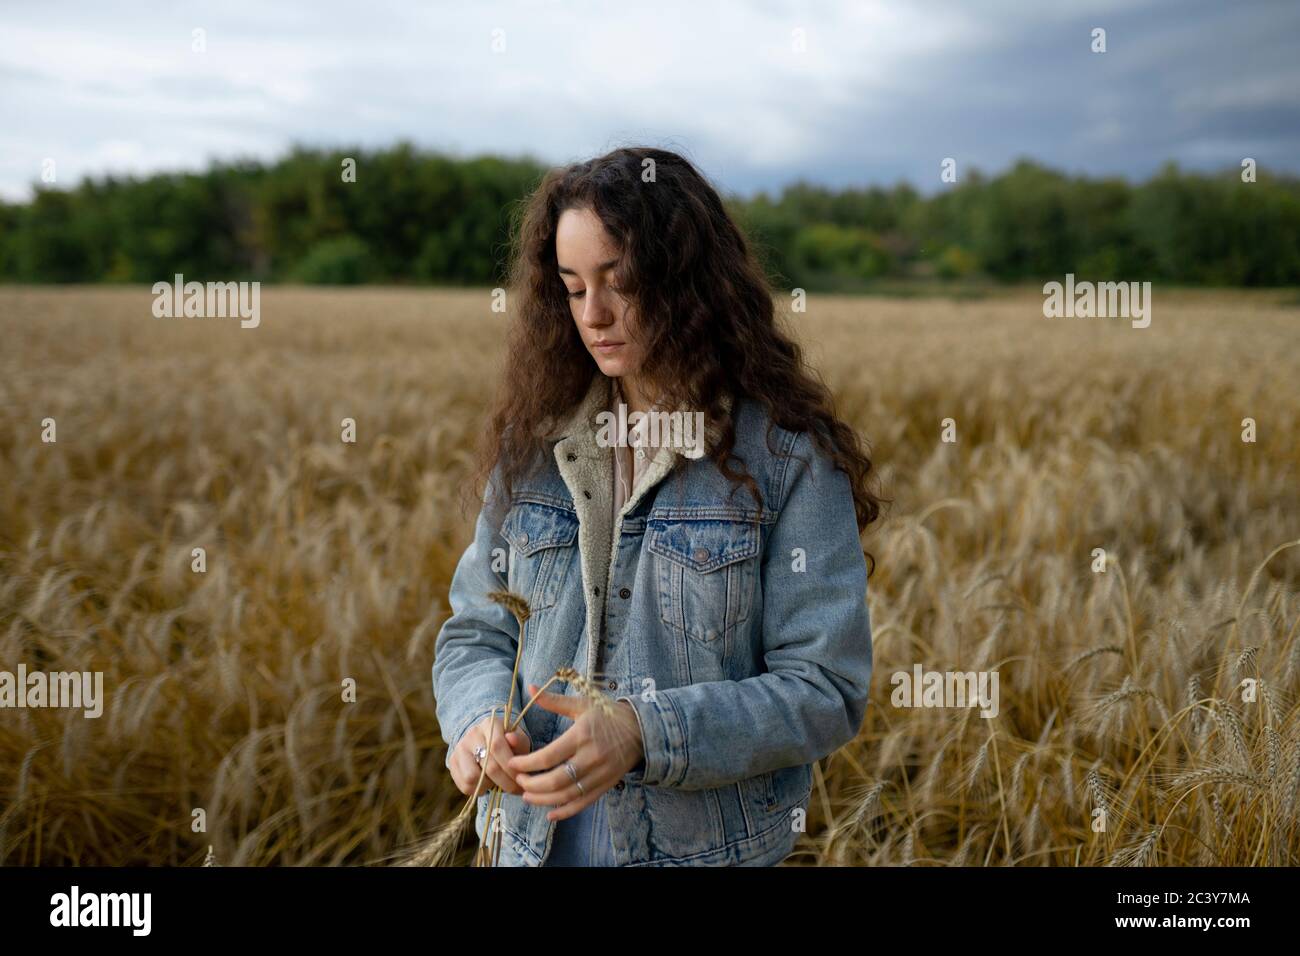 Russie, Omsk, jeune femme debout dans le champ de blé et tenant du blé Banque D'Images